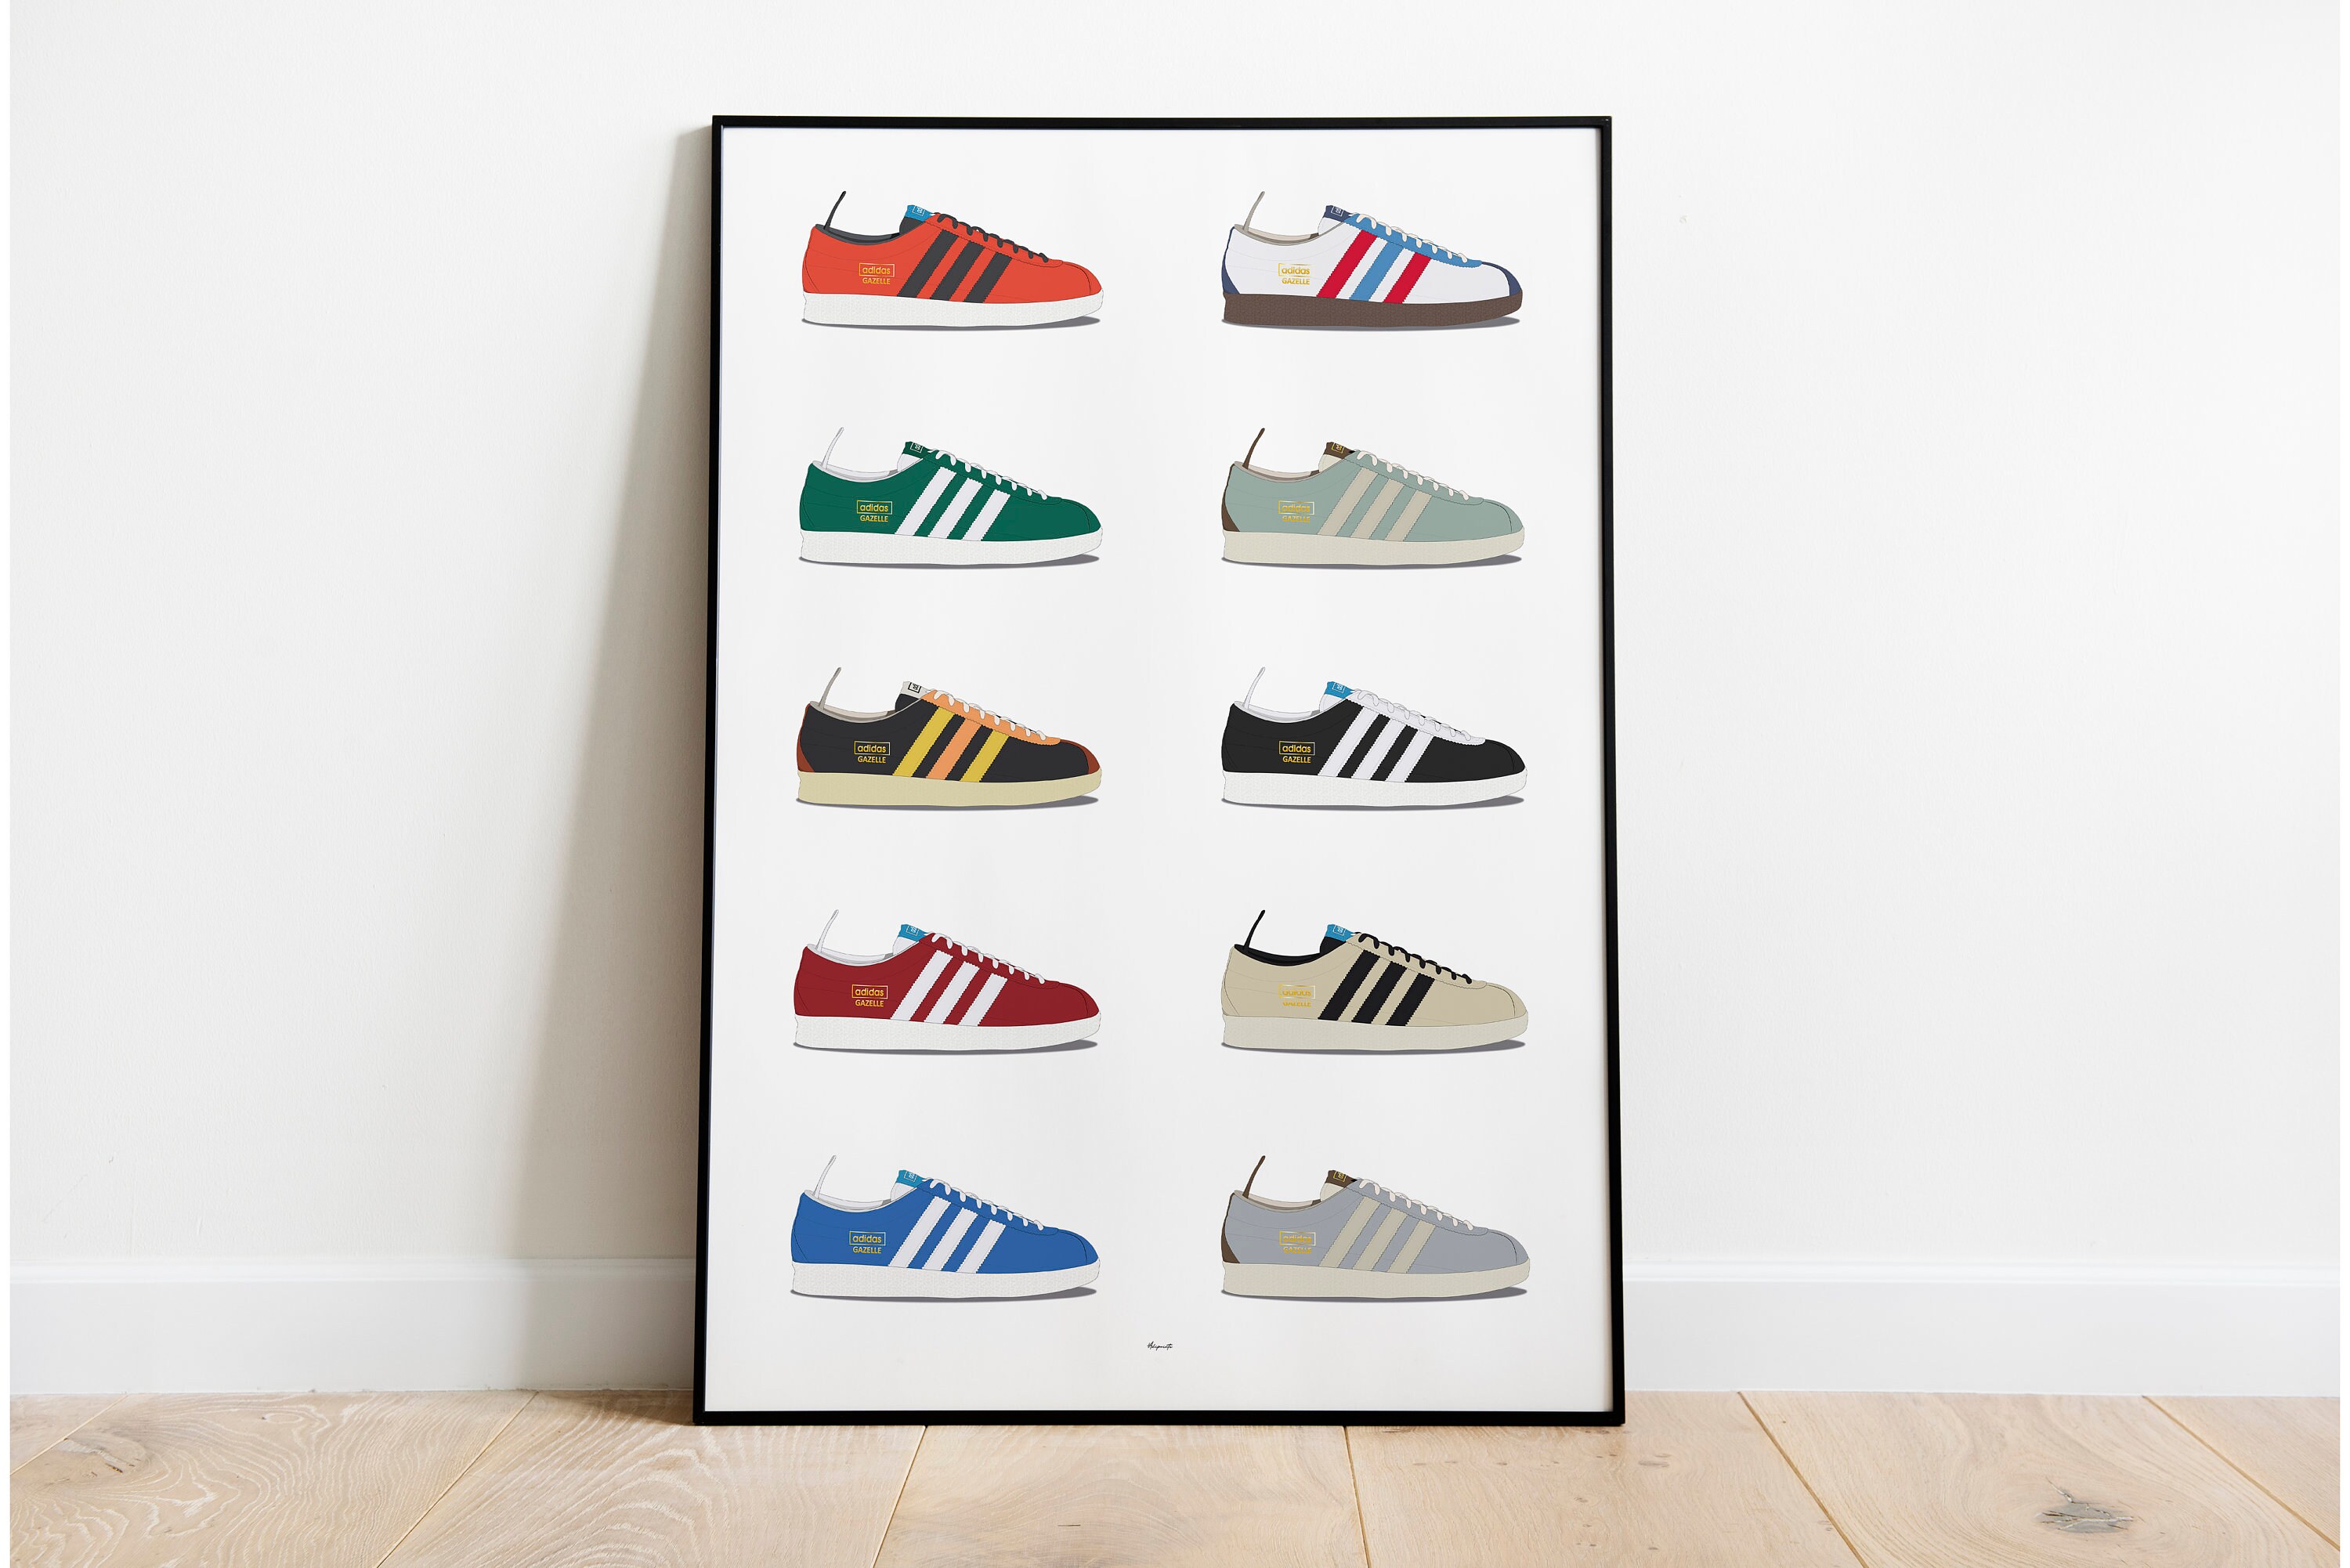 Adidas Gazelle Colourway Series Poster Print - Etsy